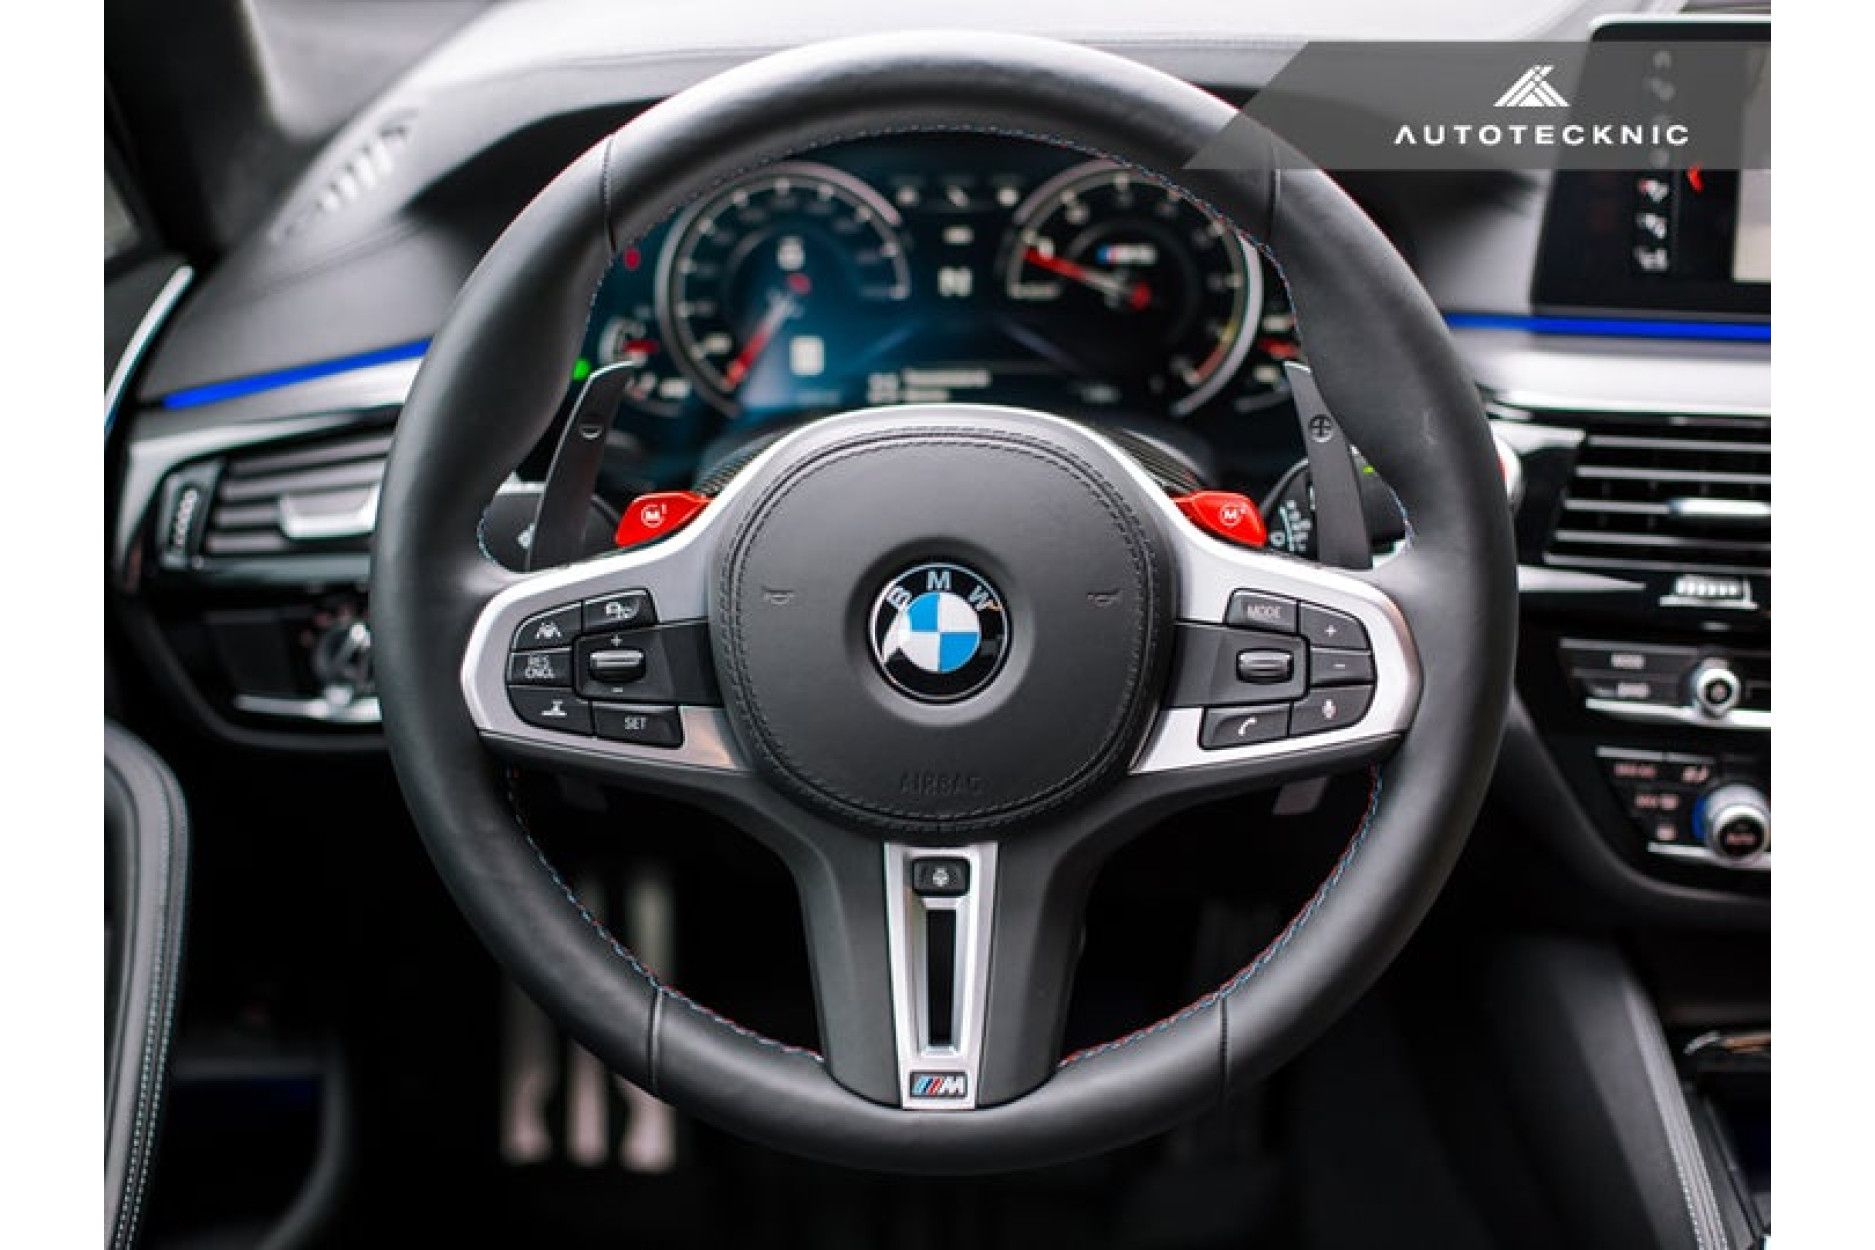 Autotecknic Schaltwippen für BMW G-Serie inkl. G80 M3, G82 M4